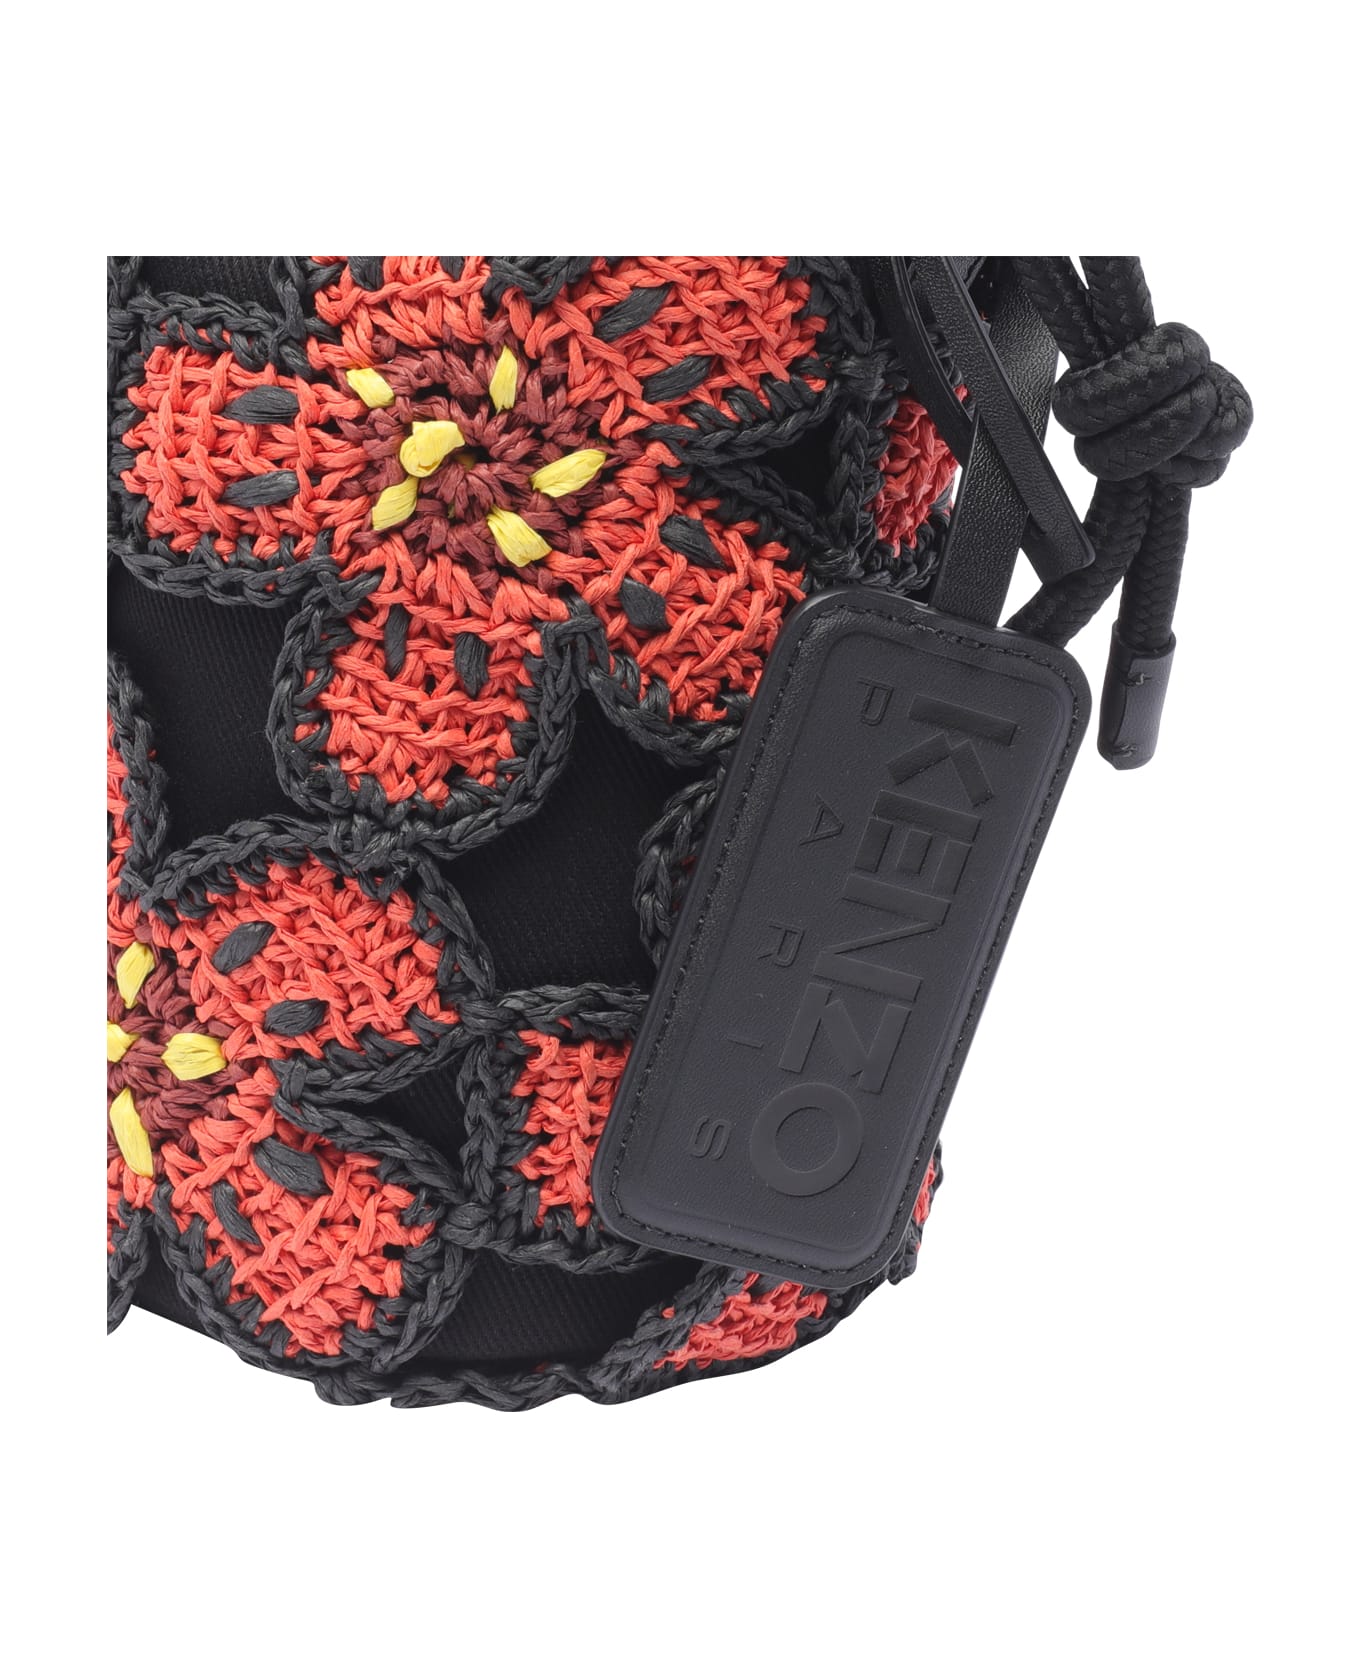 Kenzo Floral Patterned Bucket Bag - Black トートバッグ